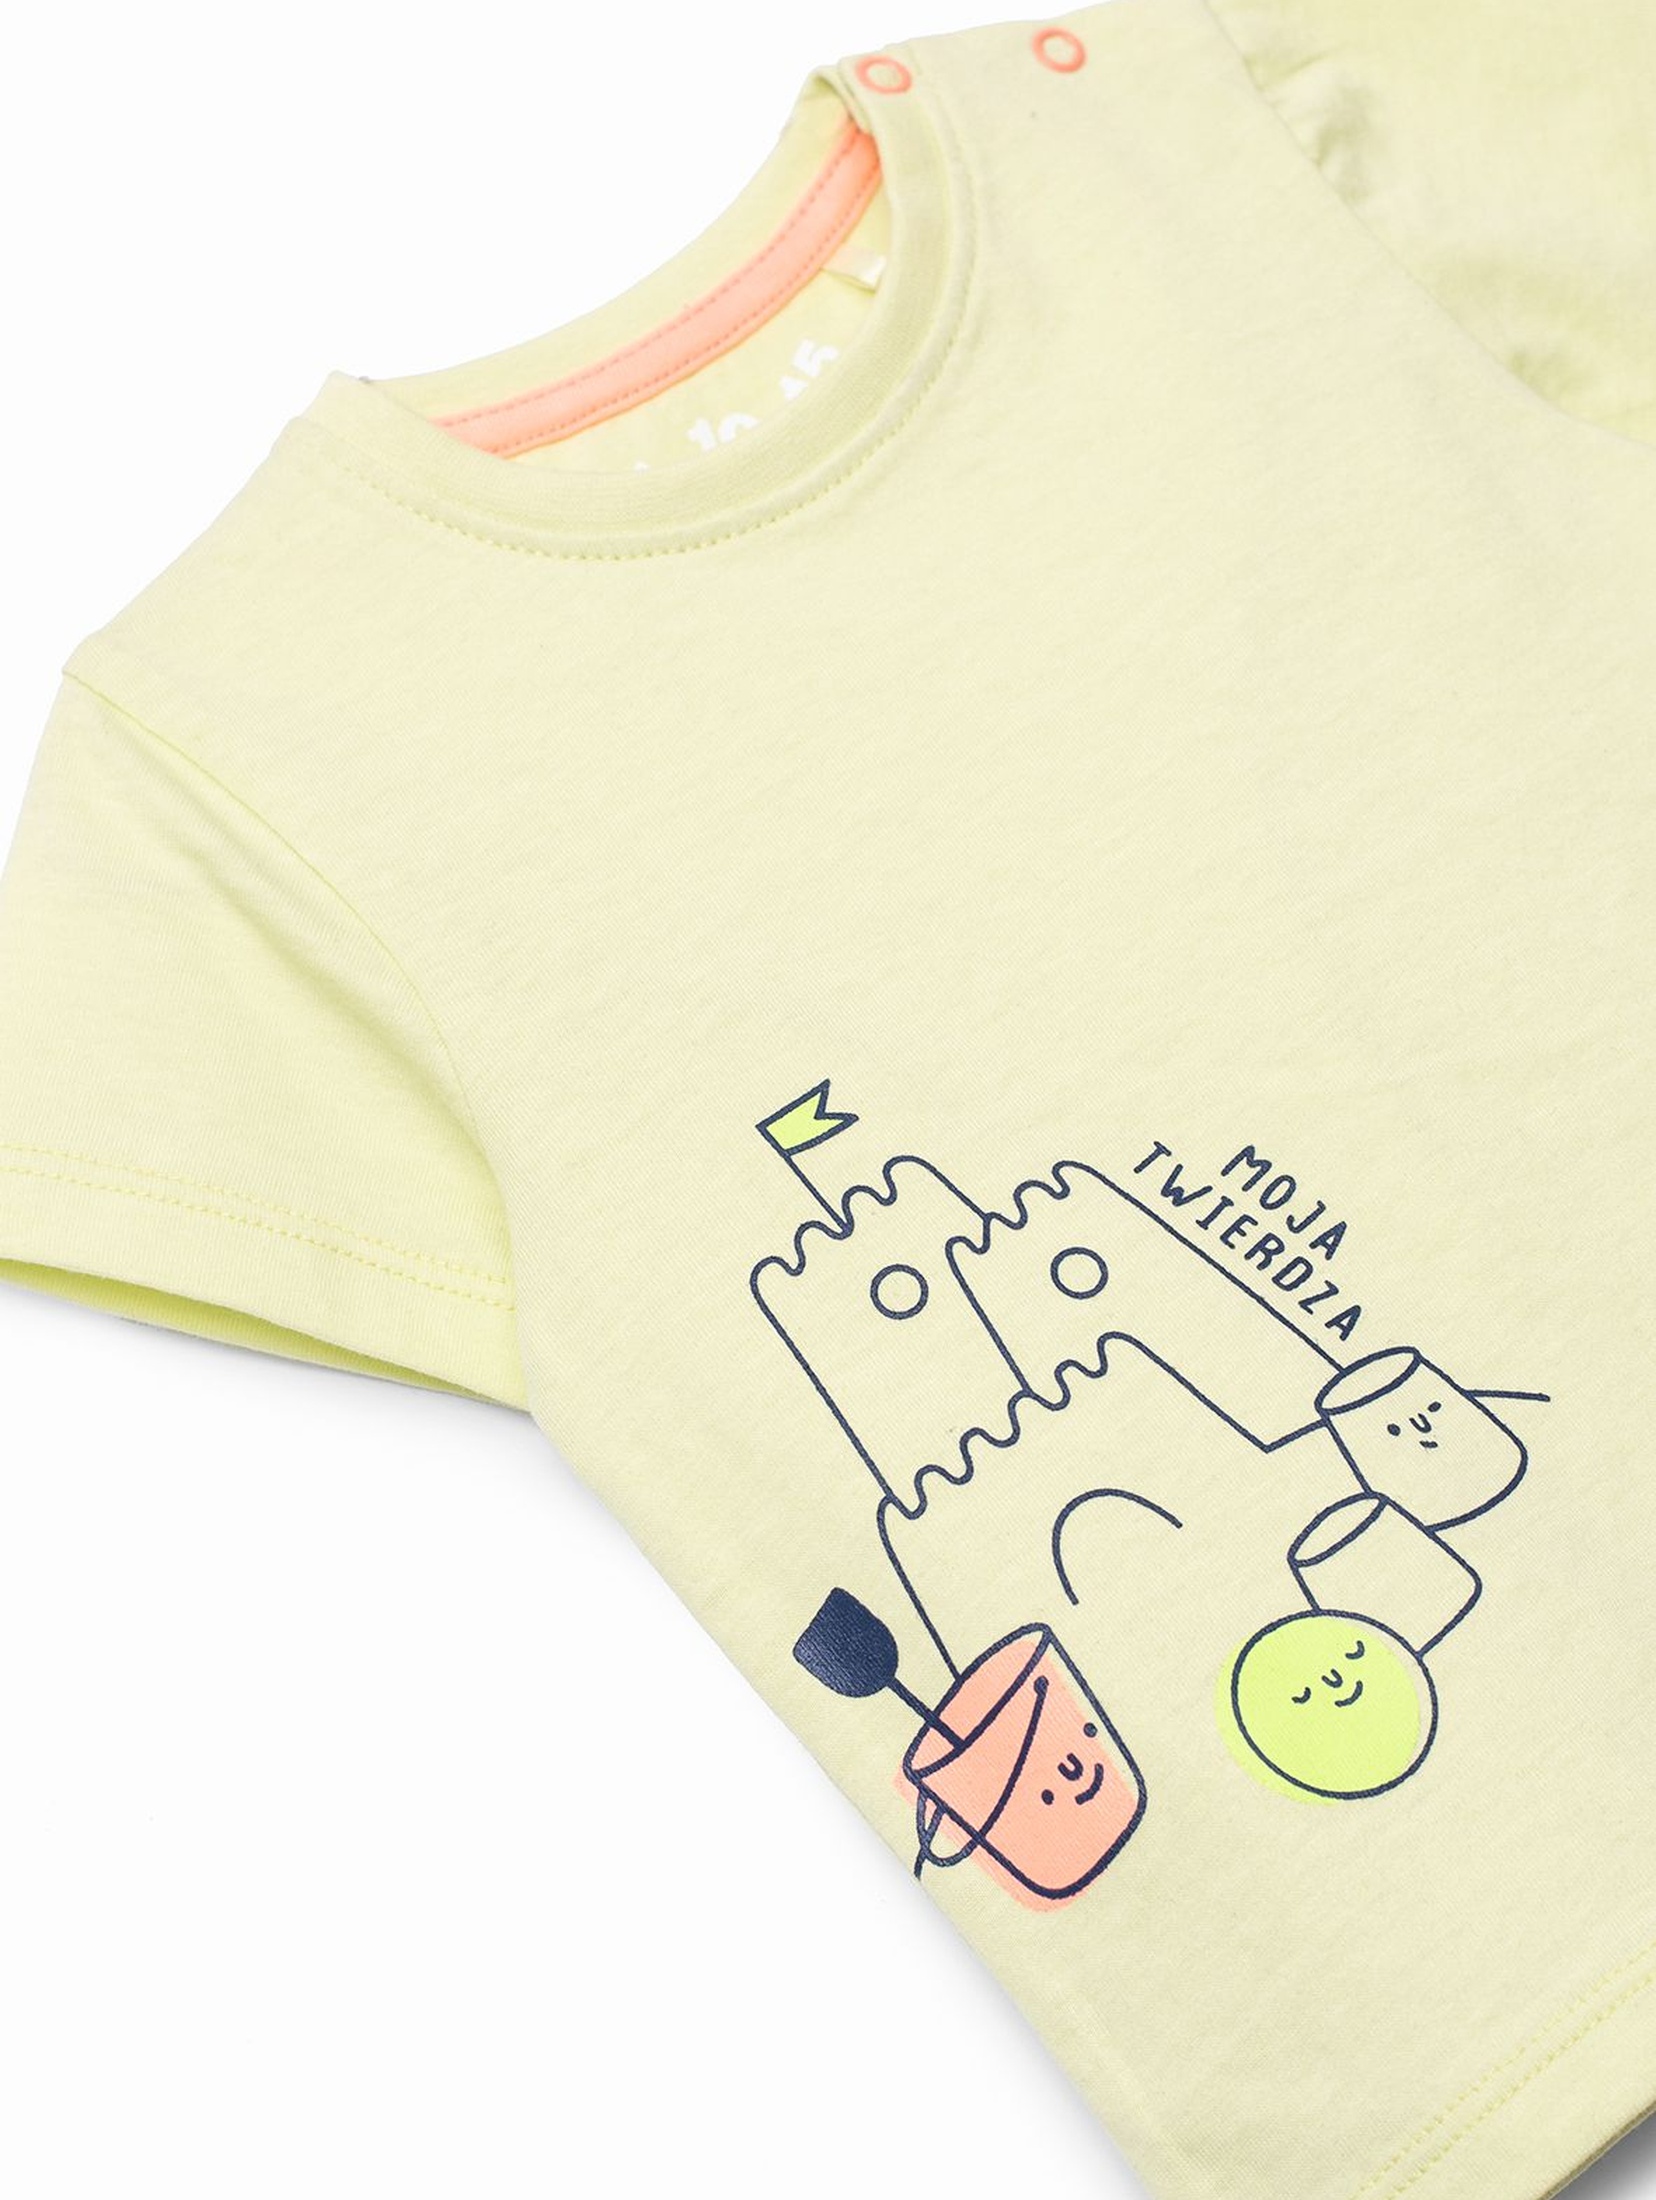 T-shirt niemowlęcy zielony z nadrukiem -100% bawełna